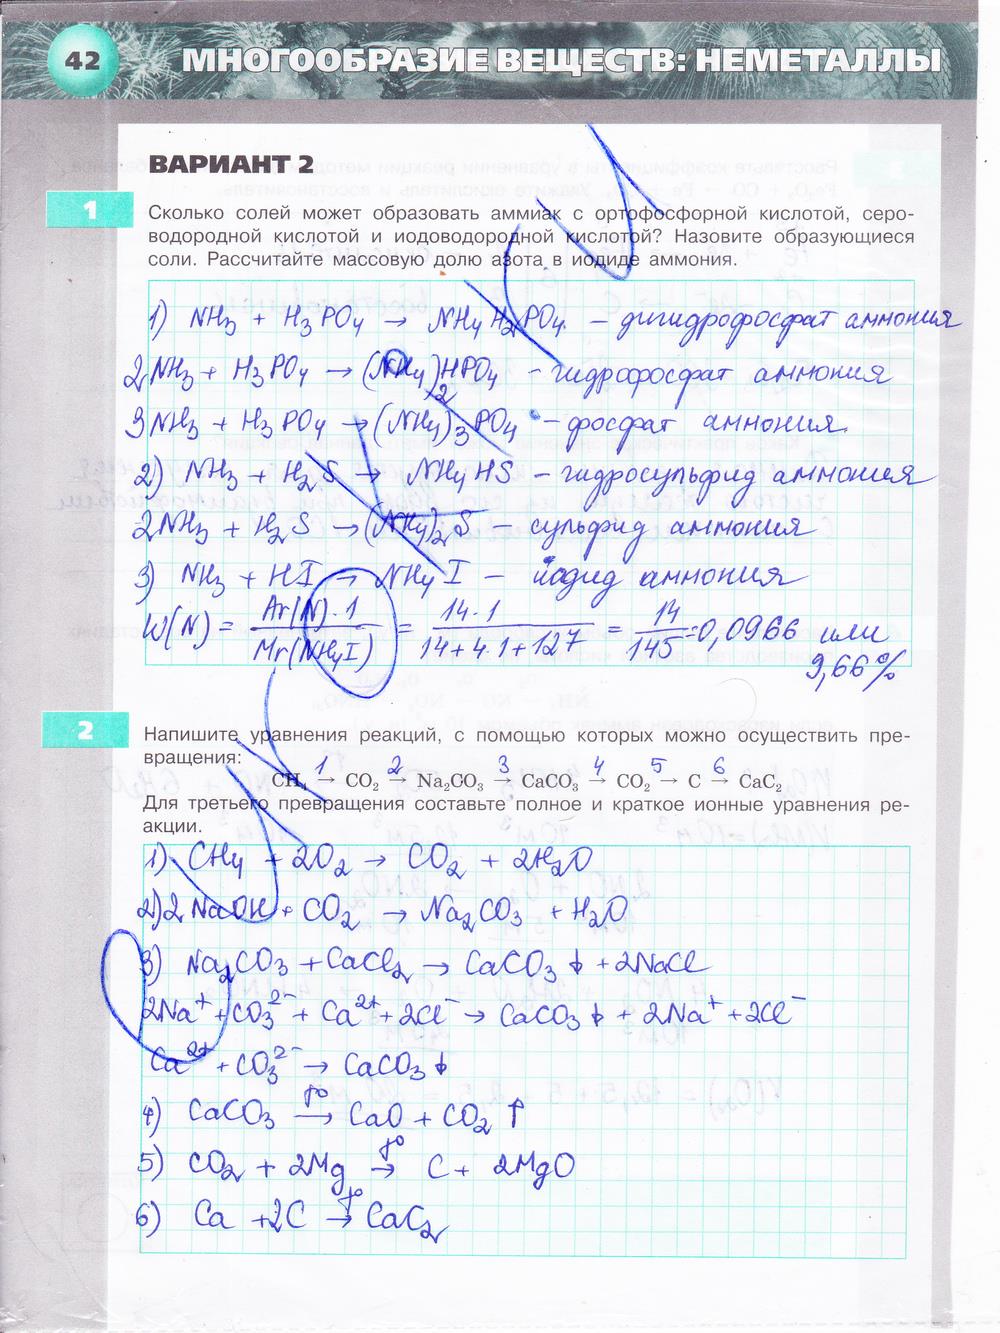 гдз 9 класс тетрадь-экзаменатор страница 42 химия Бобылева, Бирюлина